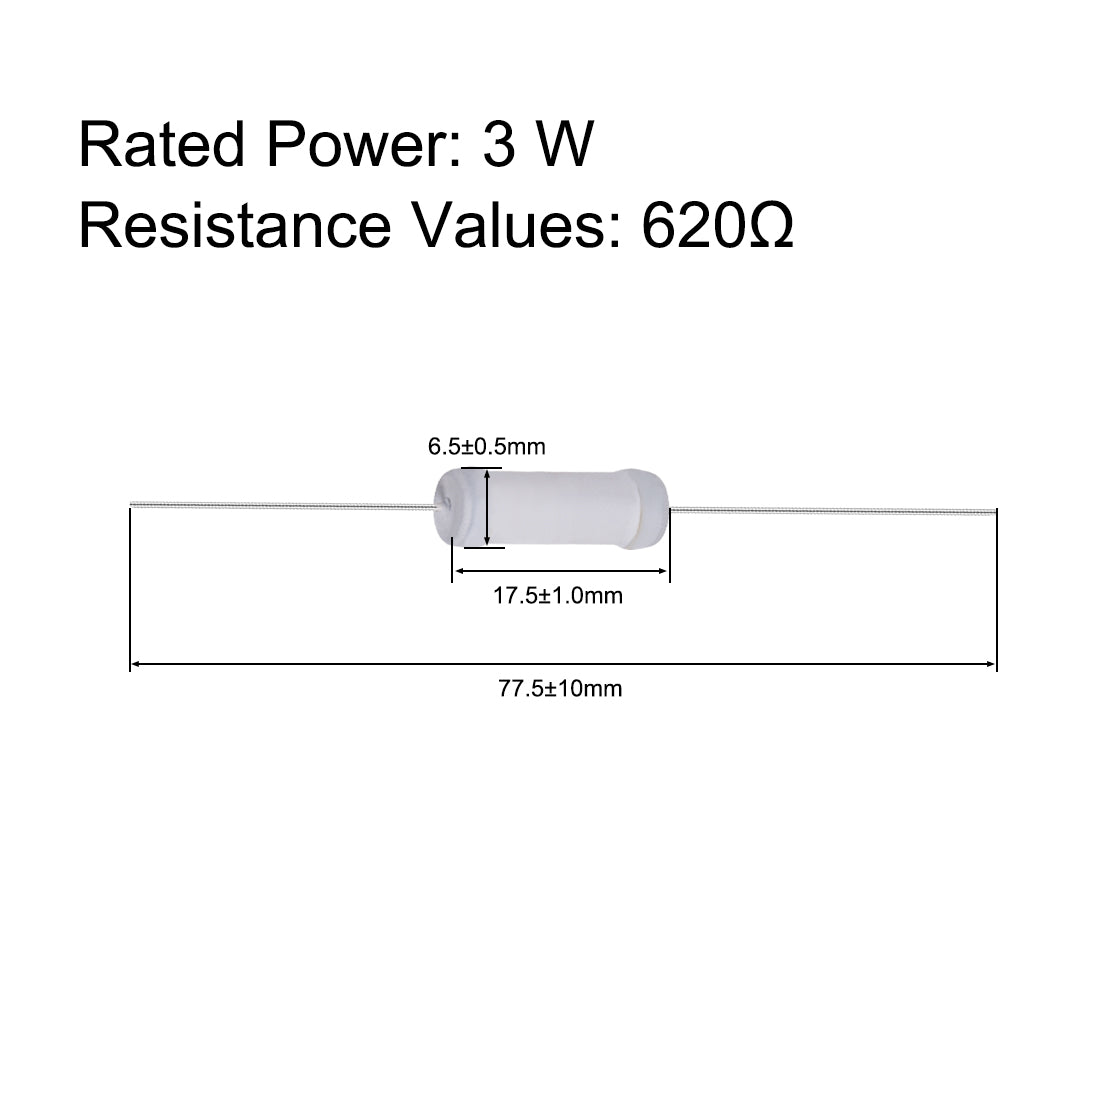 uxcell Uxcell 20pcs 3W 3 Watt Metal Oxide Film Resistor Lead 620 Ohm ±5% Tolerance